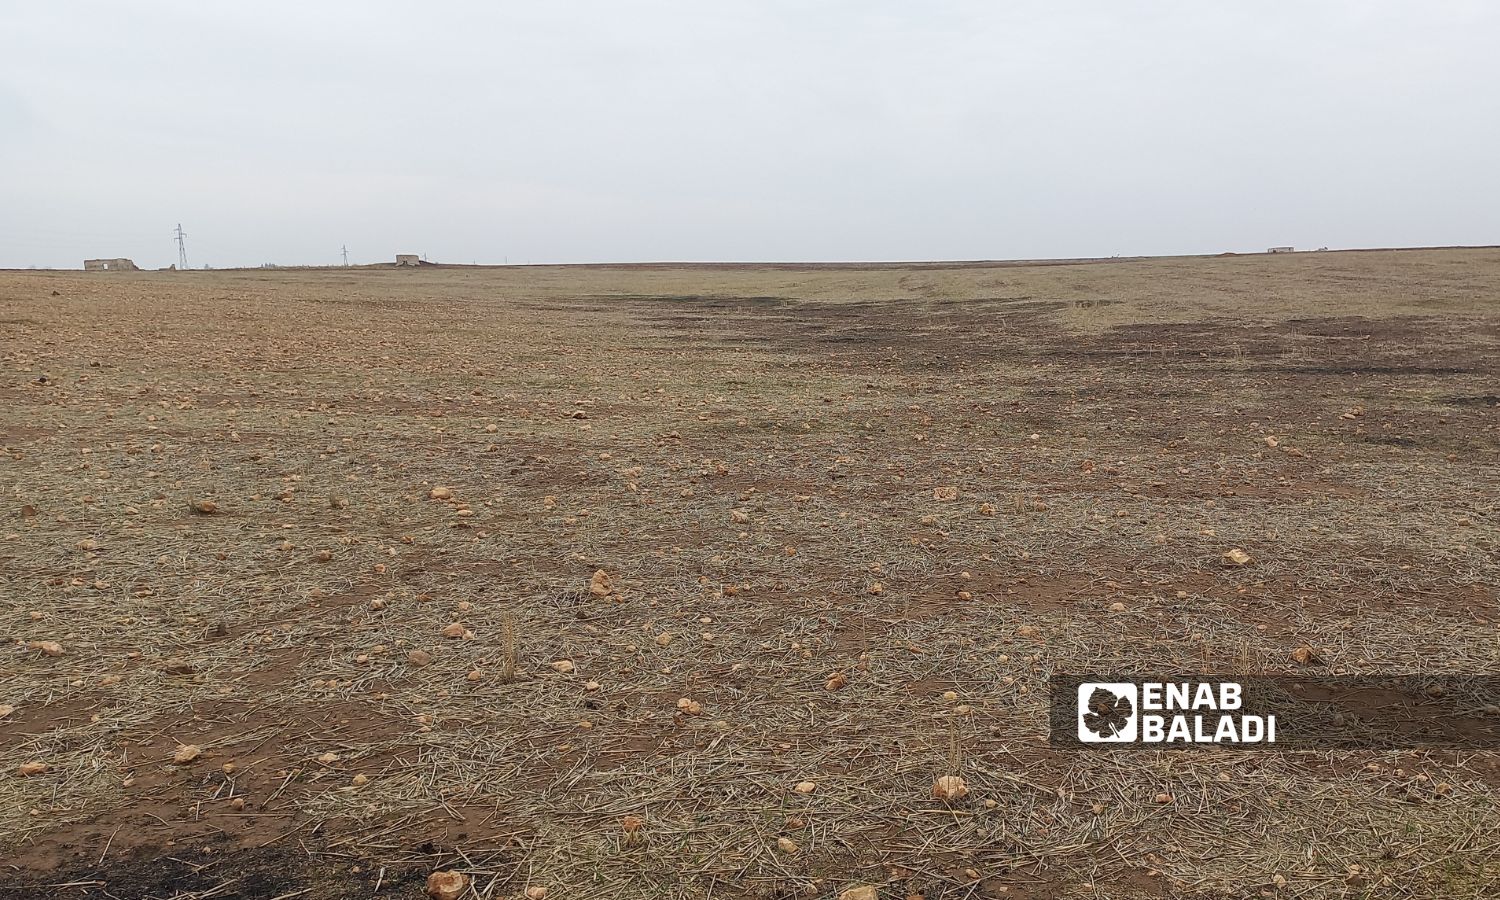 أرض زراعية تواجه التصحر لانحسار المياه الجوفية في قرية أبو جلود بريف رأس العين - 7 من كانون الأول 2023 (عنب بلدي)